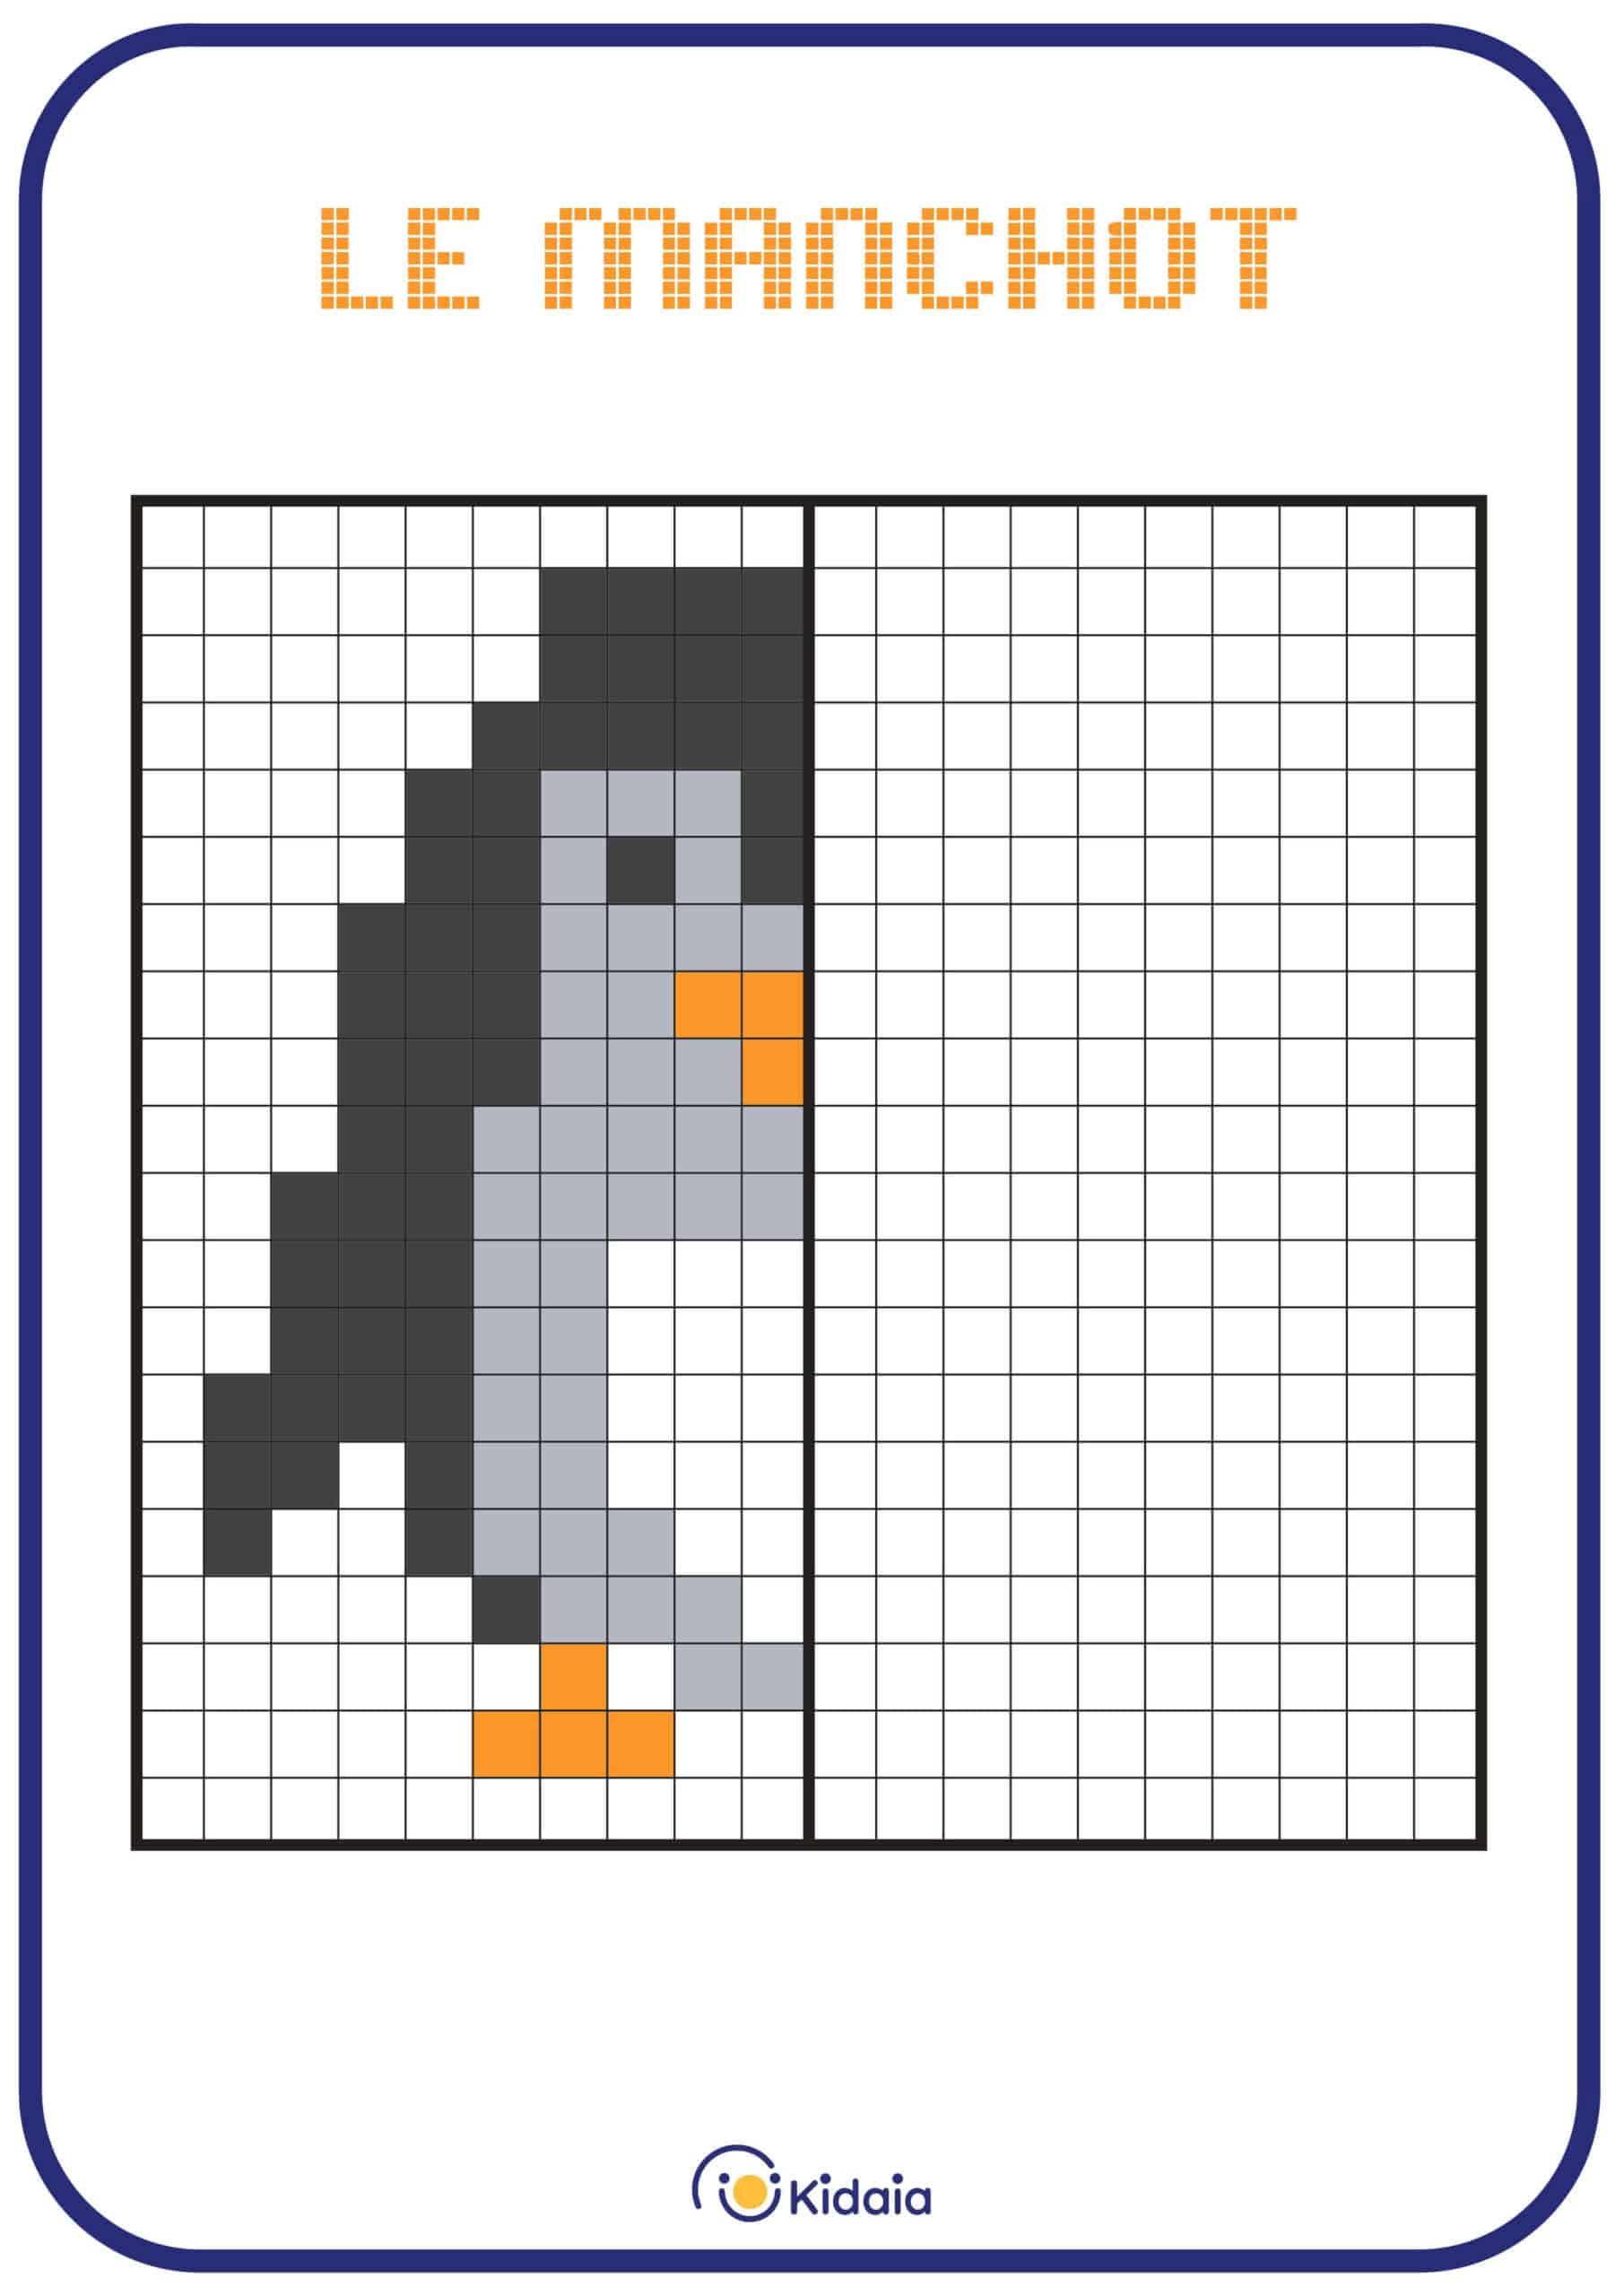 Image de manchot en pixel art pour que les enfants apprennent la symétrie.